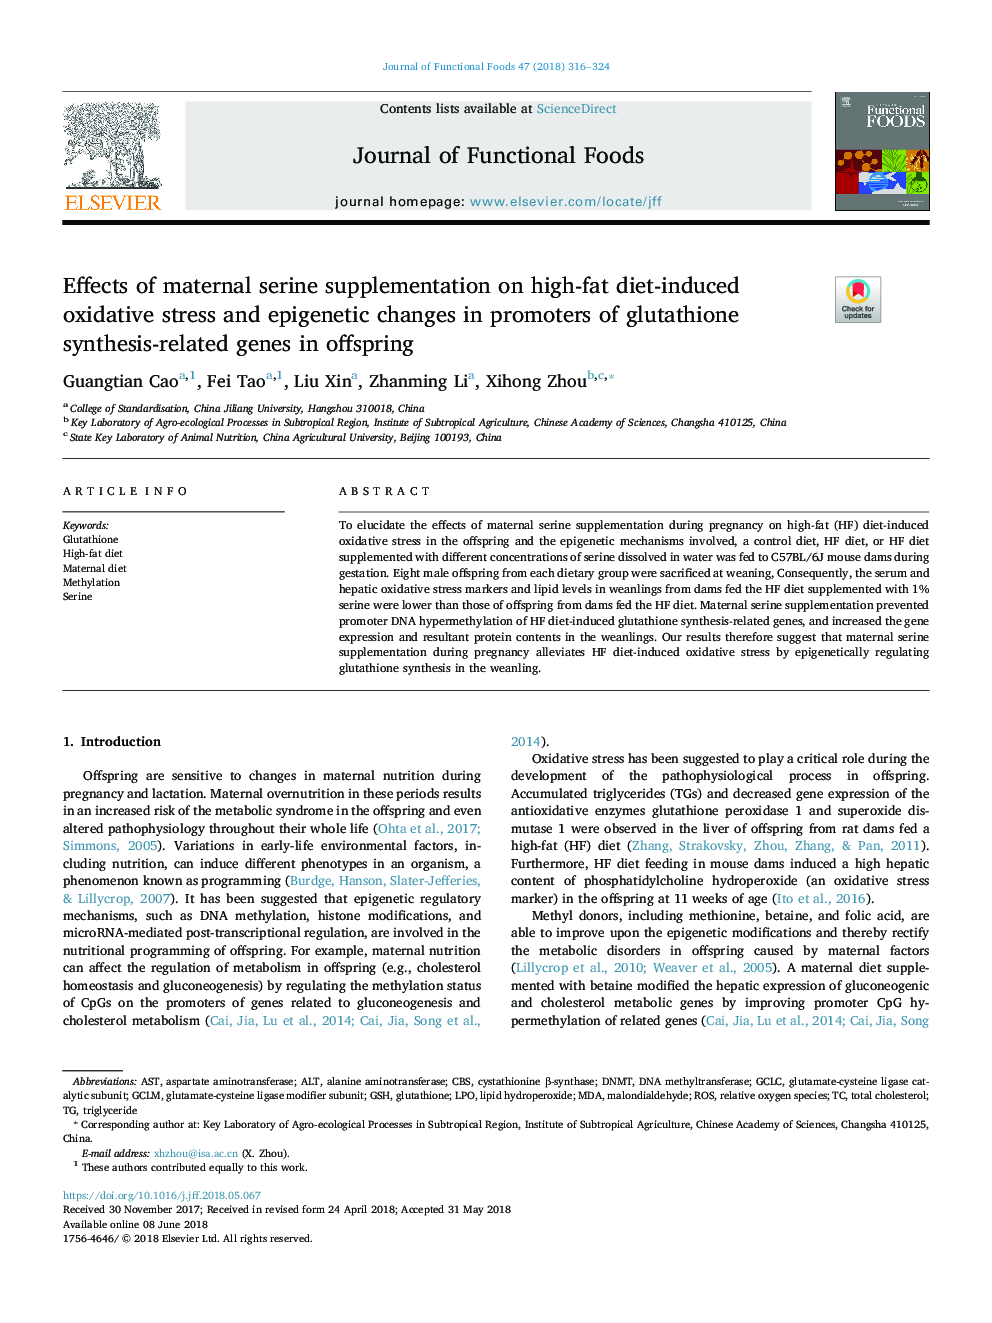 تأثیر مکمل سرین روی مادران مبتلا به استرس اکسیداتیو ناشی از رژیم غذایی بالا و تغییرات اپی ژنتیکی در پروموترهای ژن مرتبط با سنتز گلوتاتیون در پسران 